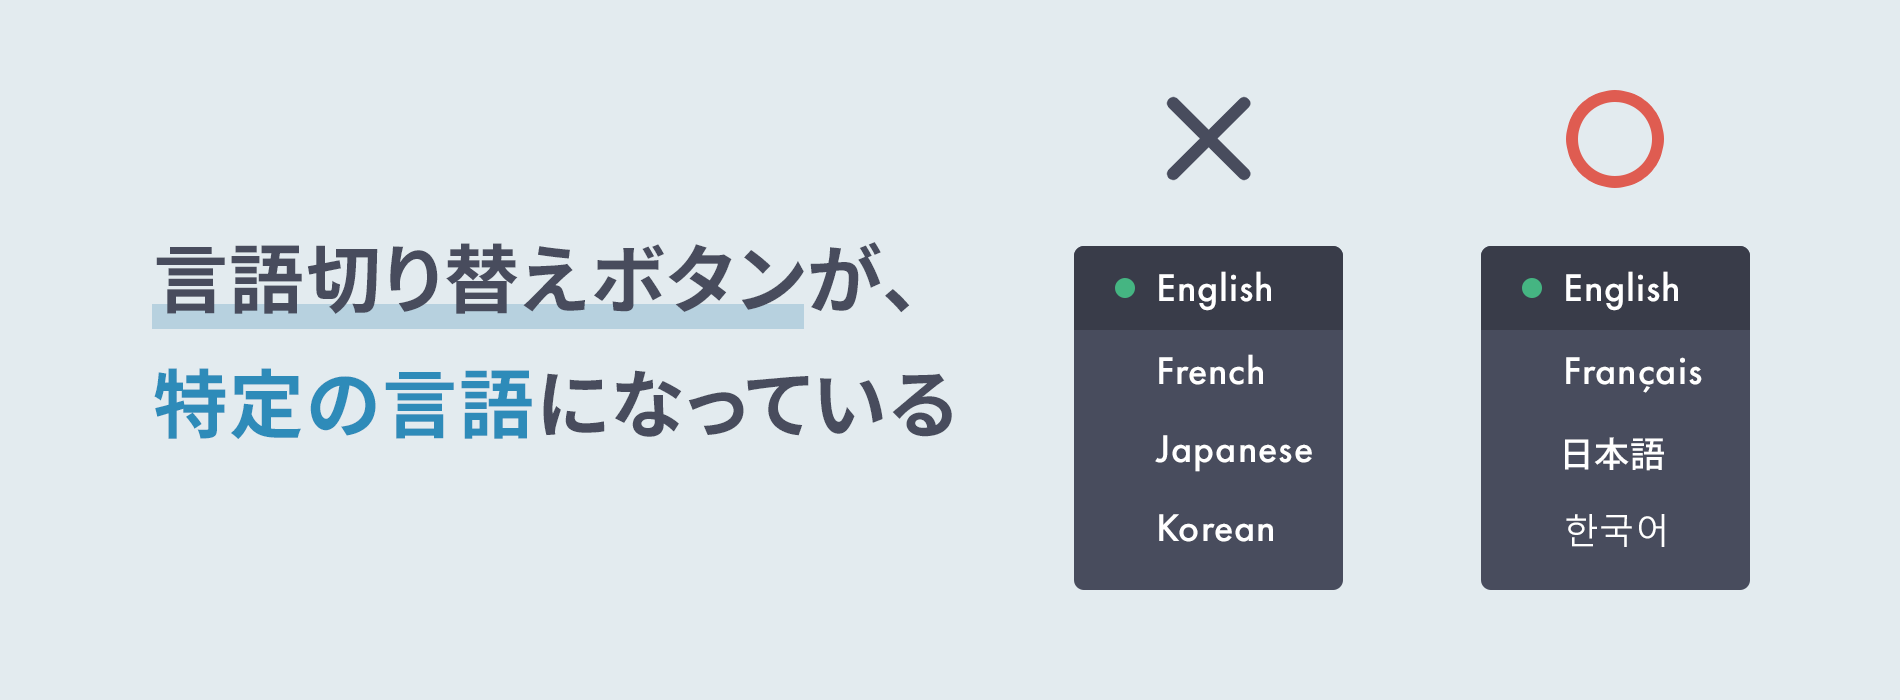 言語切り替えボタンが特定の言語